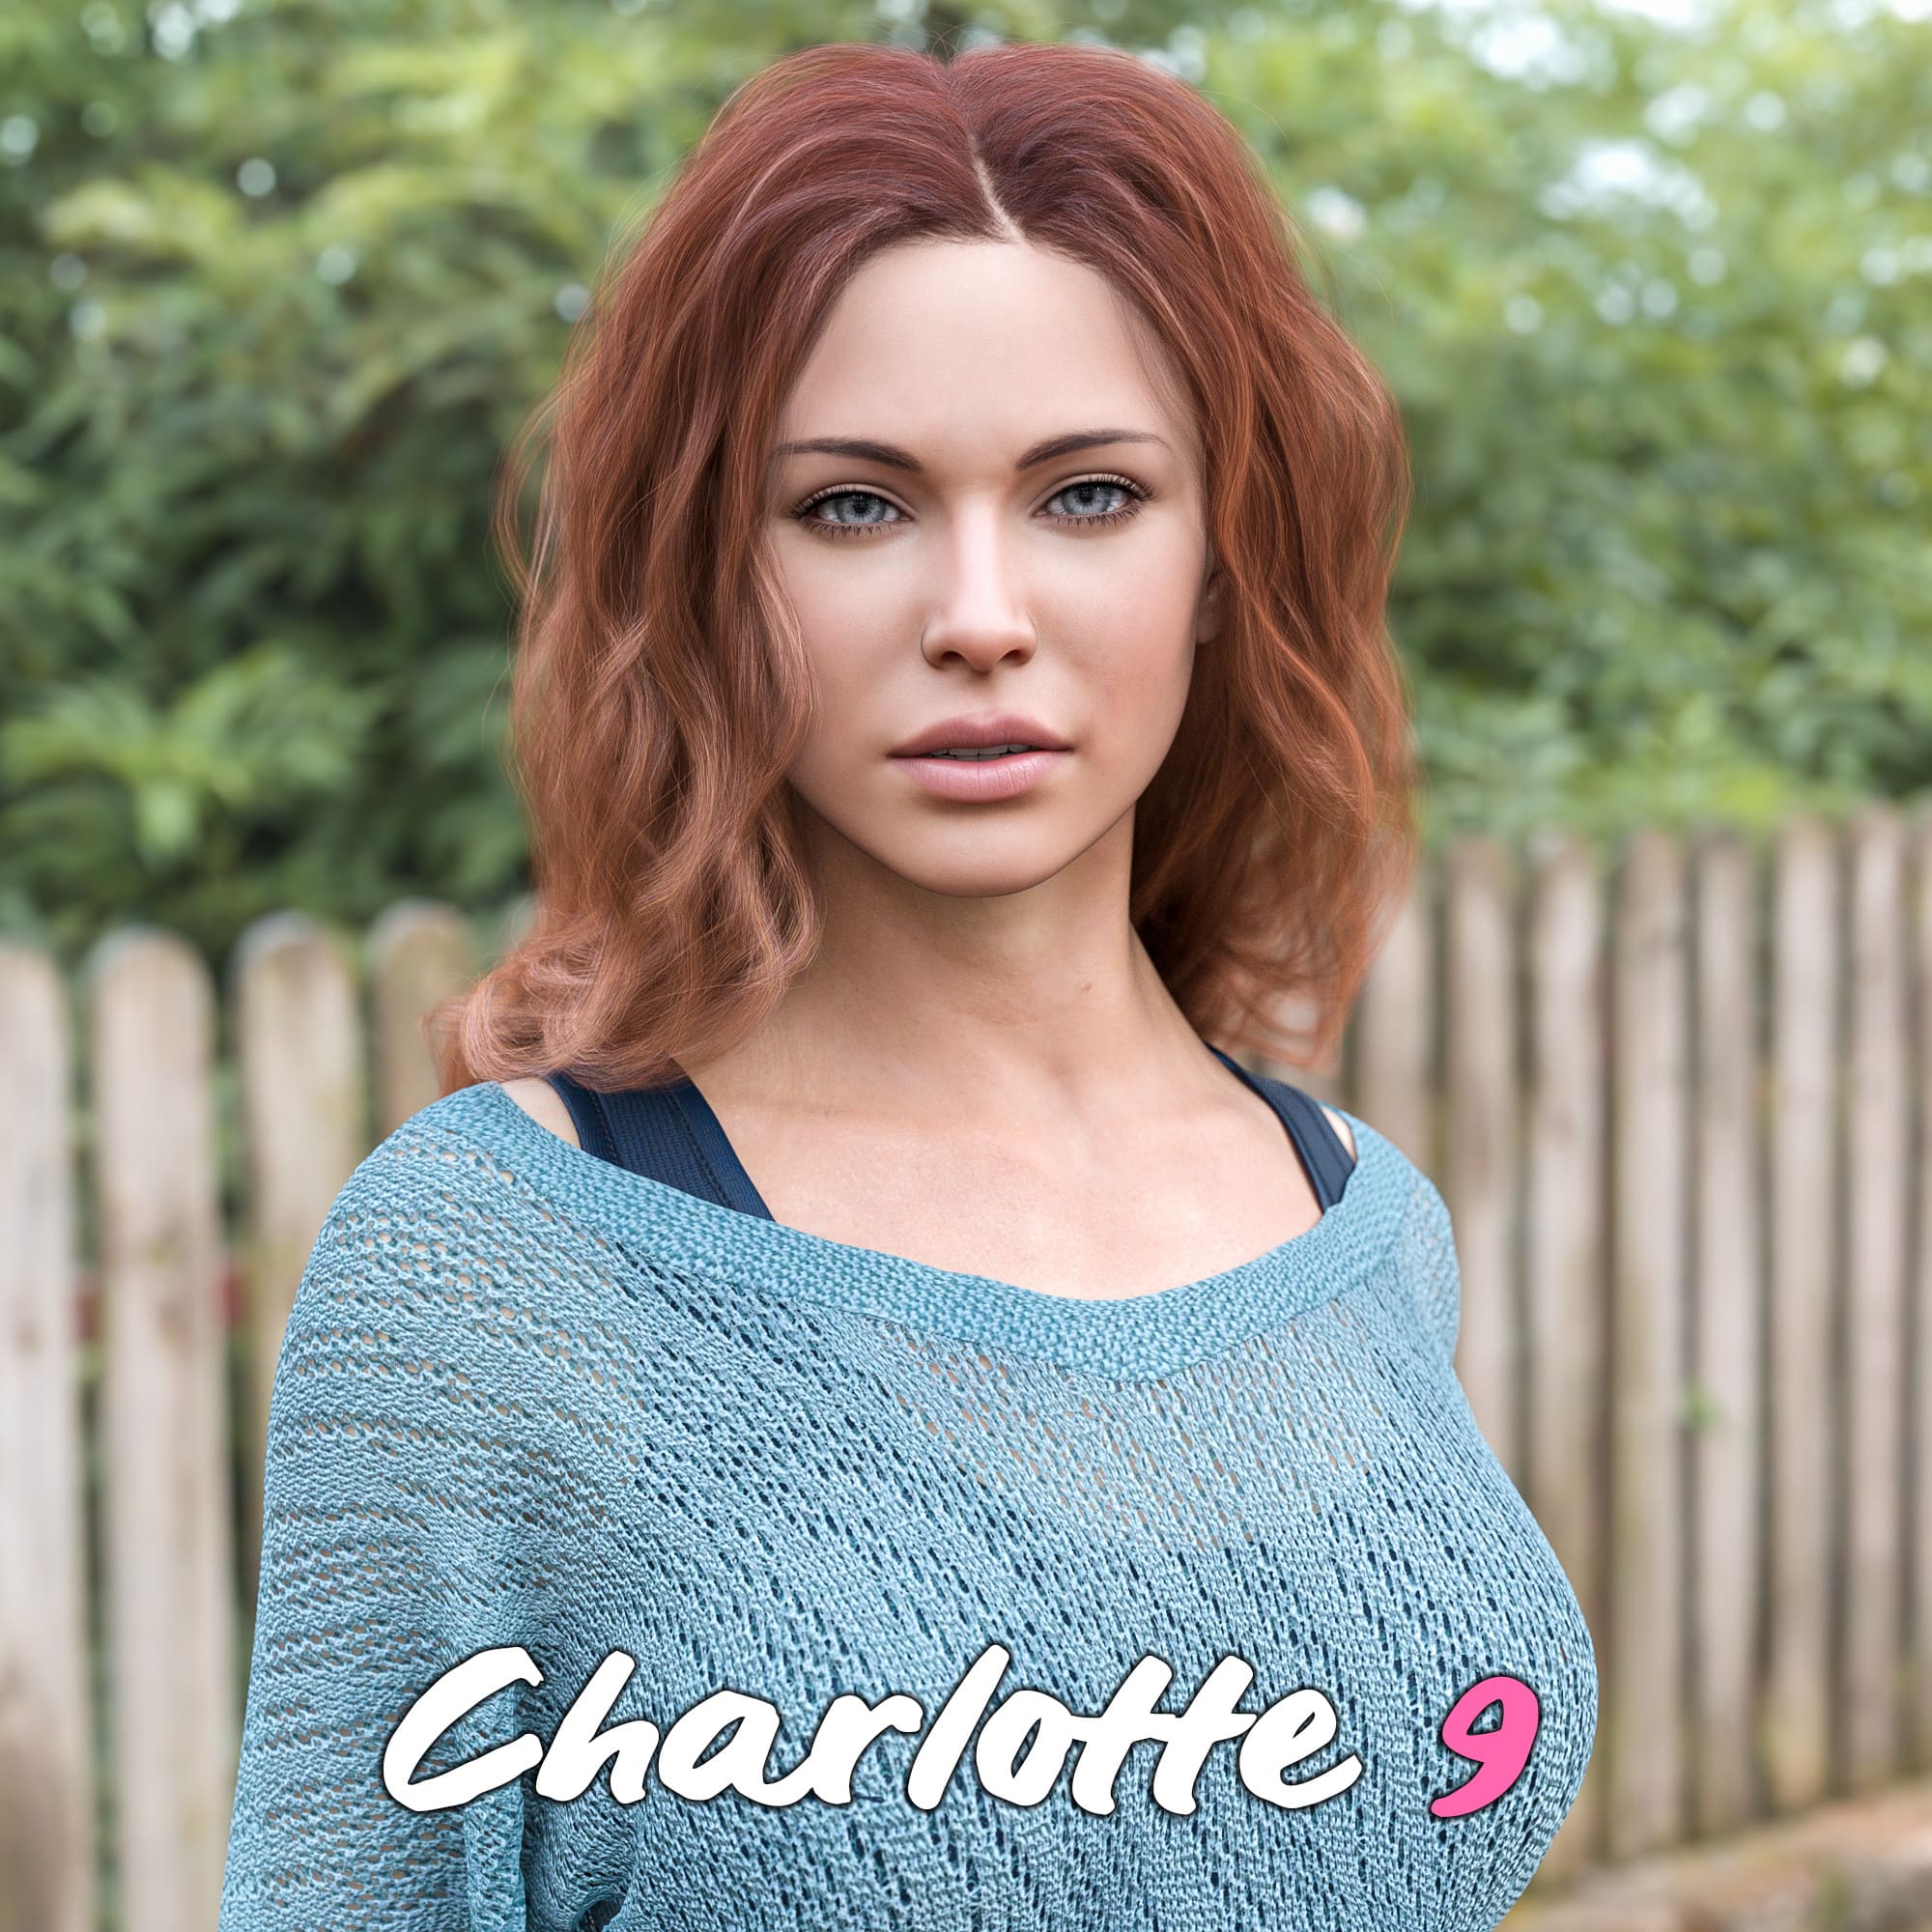 Charlotte Character Morph for Genesis 9_DAZ3D下载站